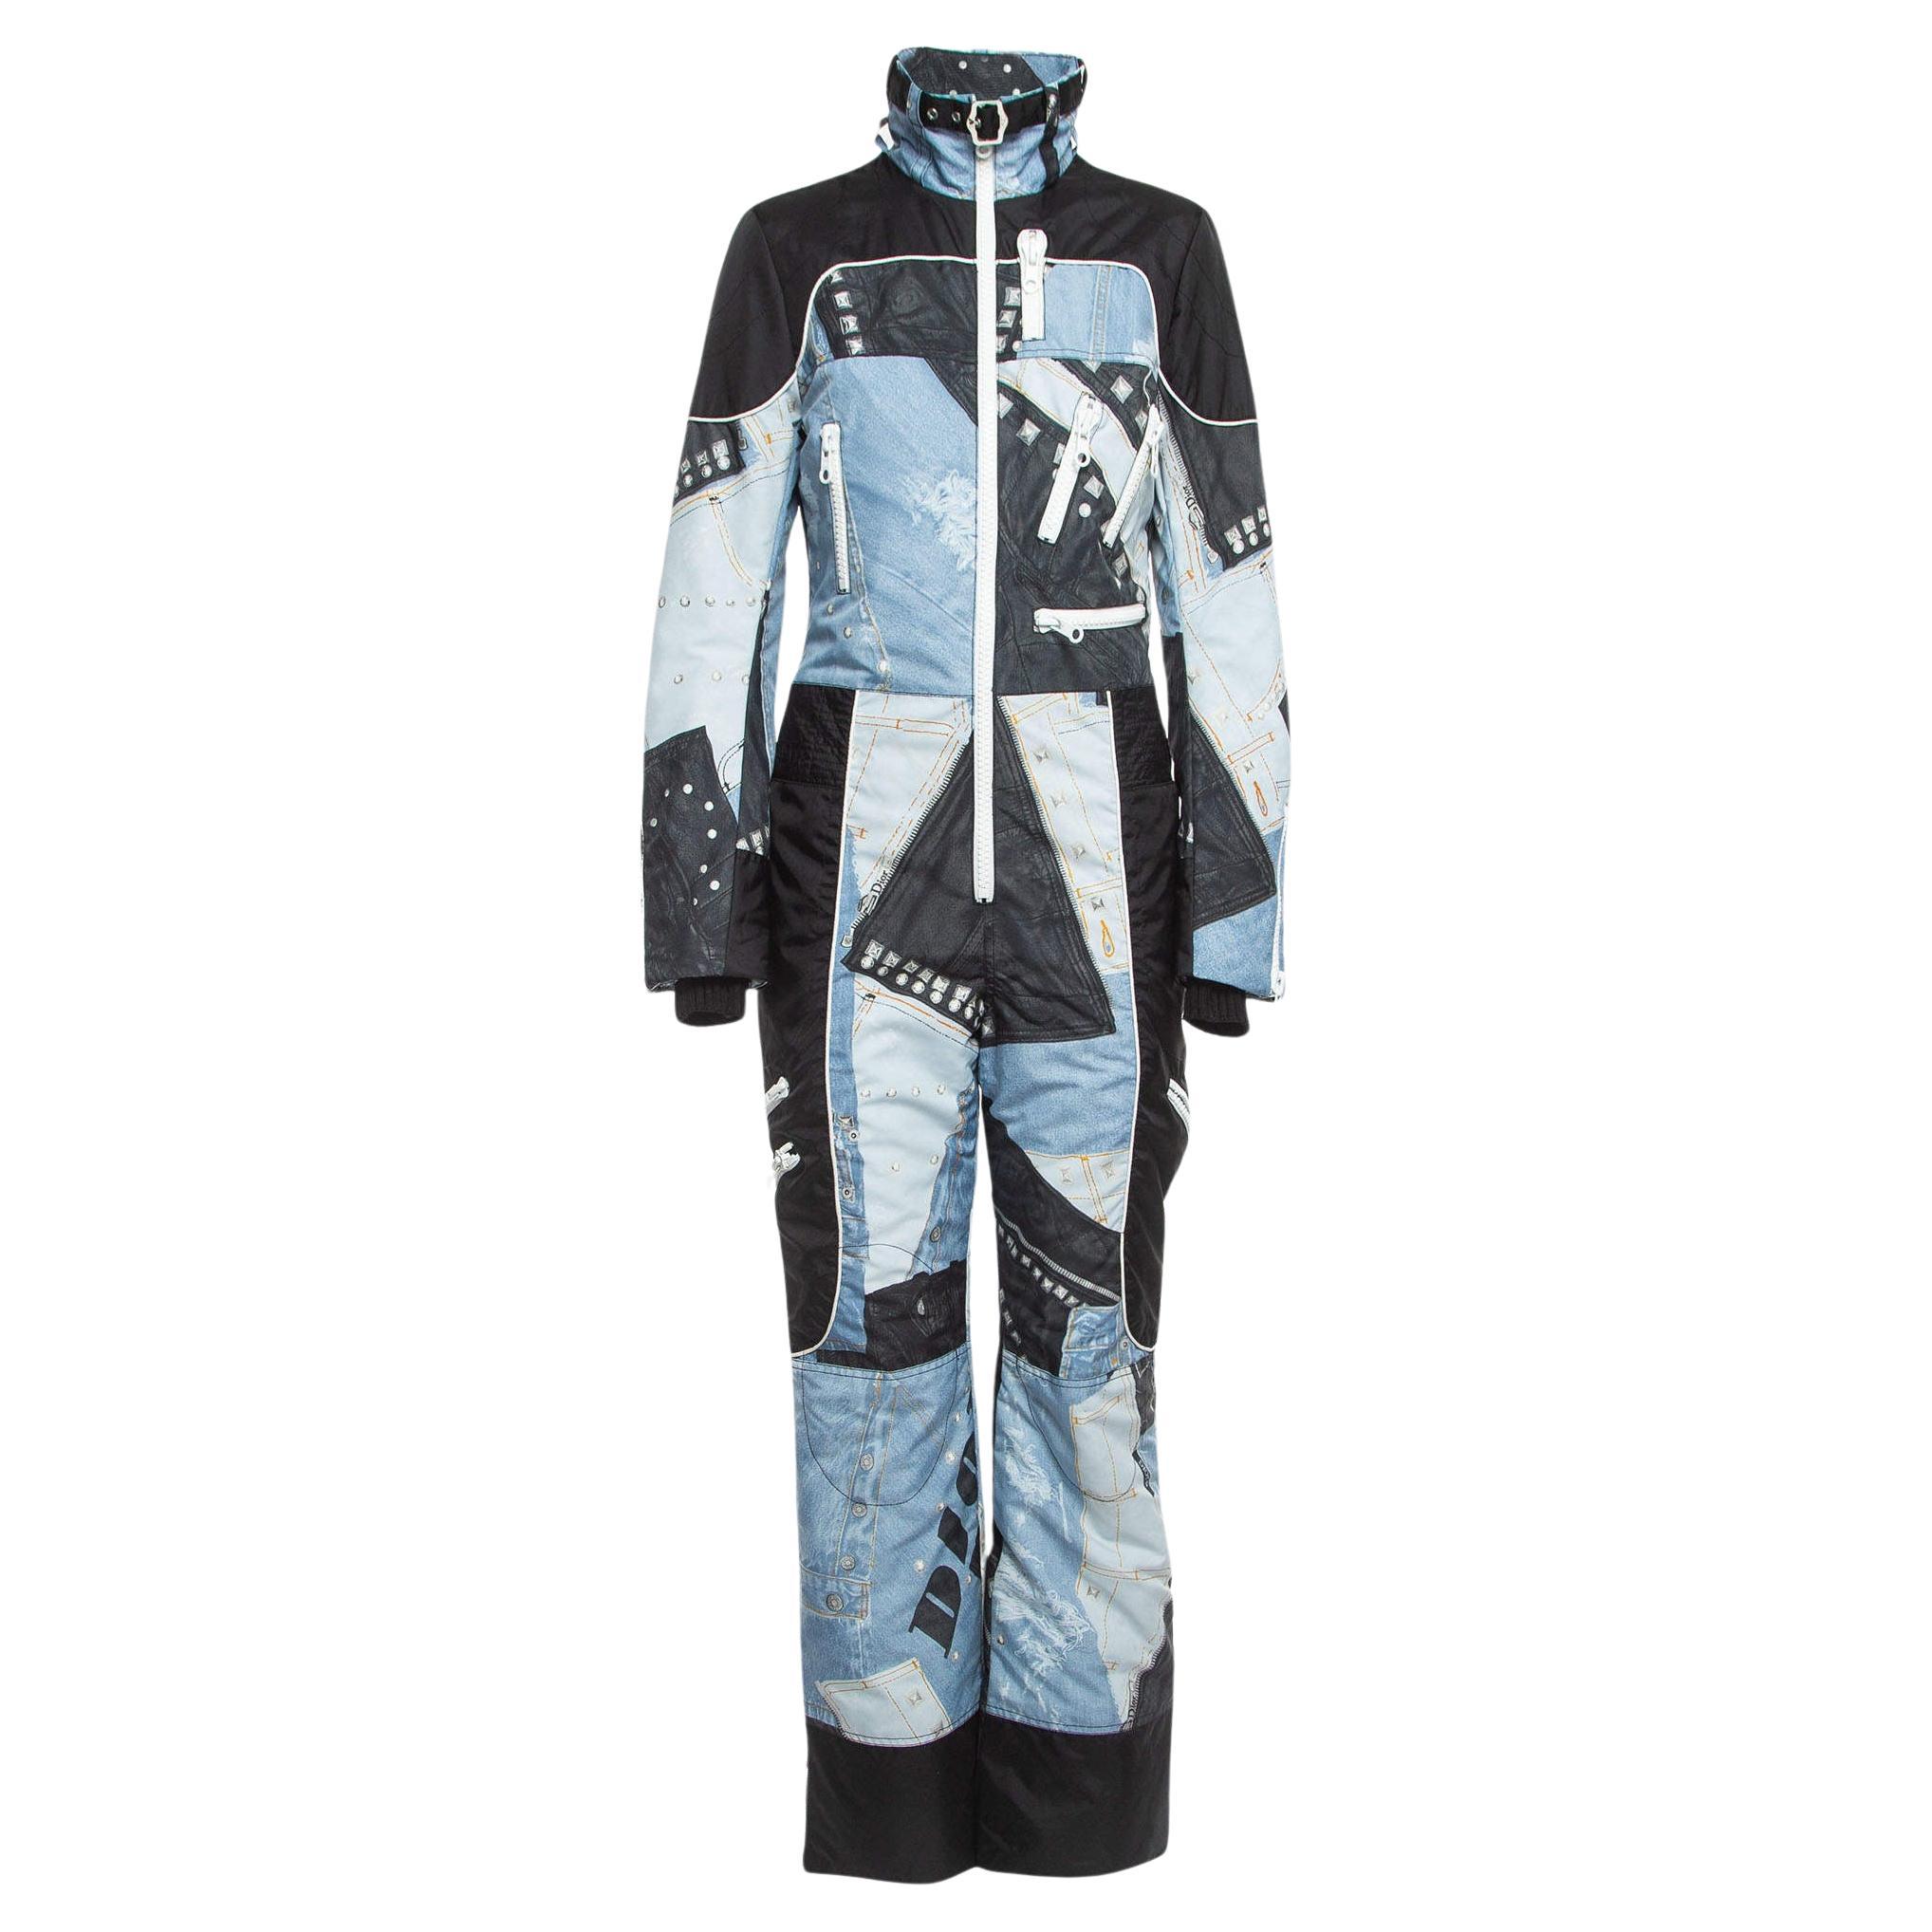 Christian Dior Boutique Combinaison de ski en denim et cuir synthétique imprimé bleu/noir M.